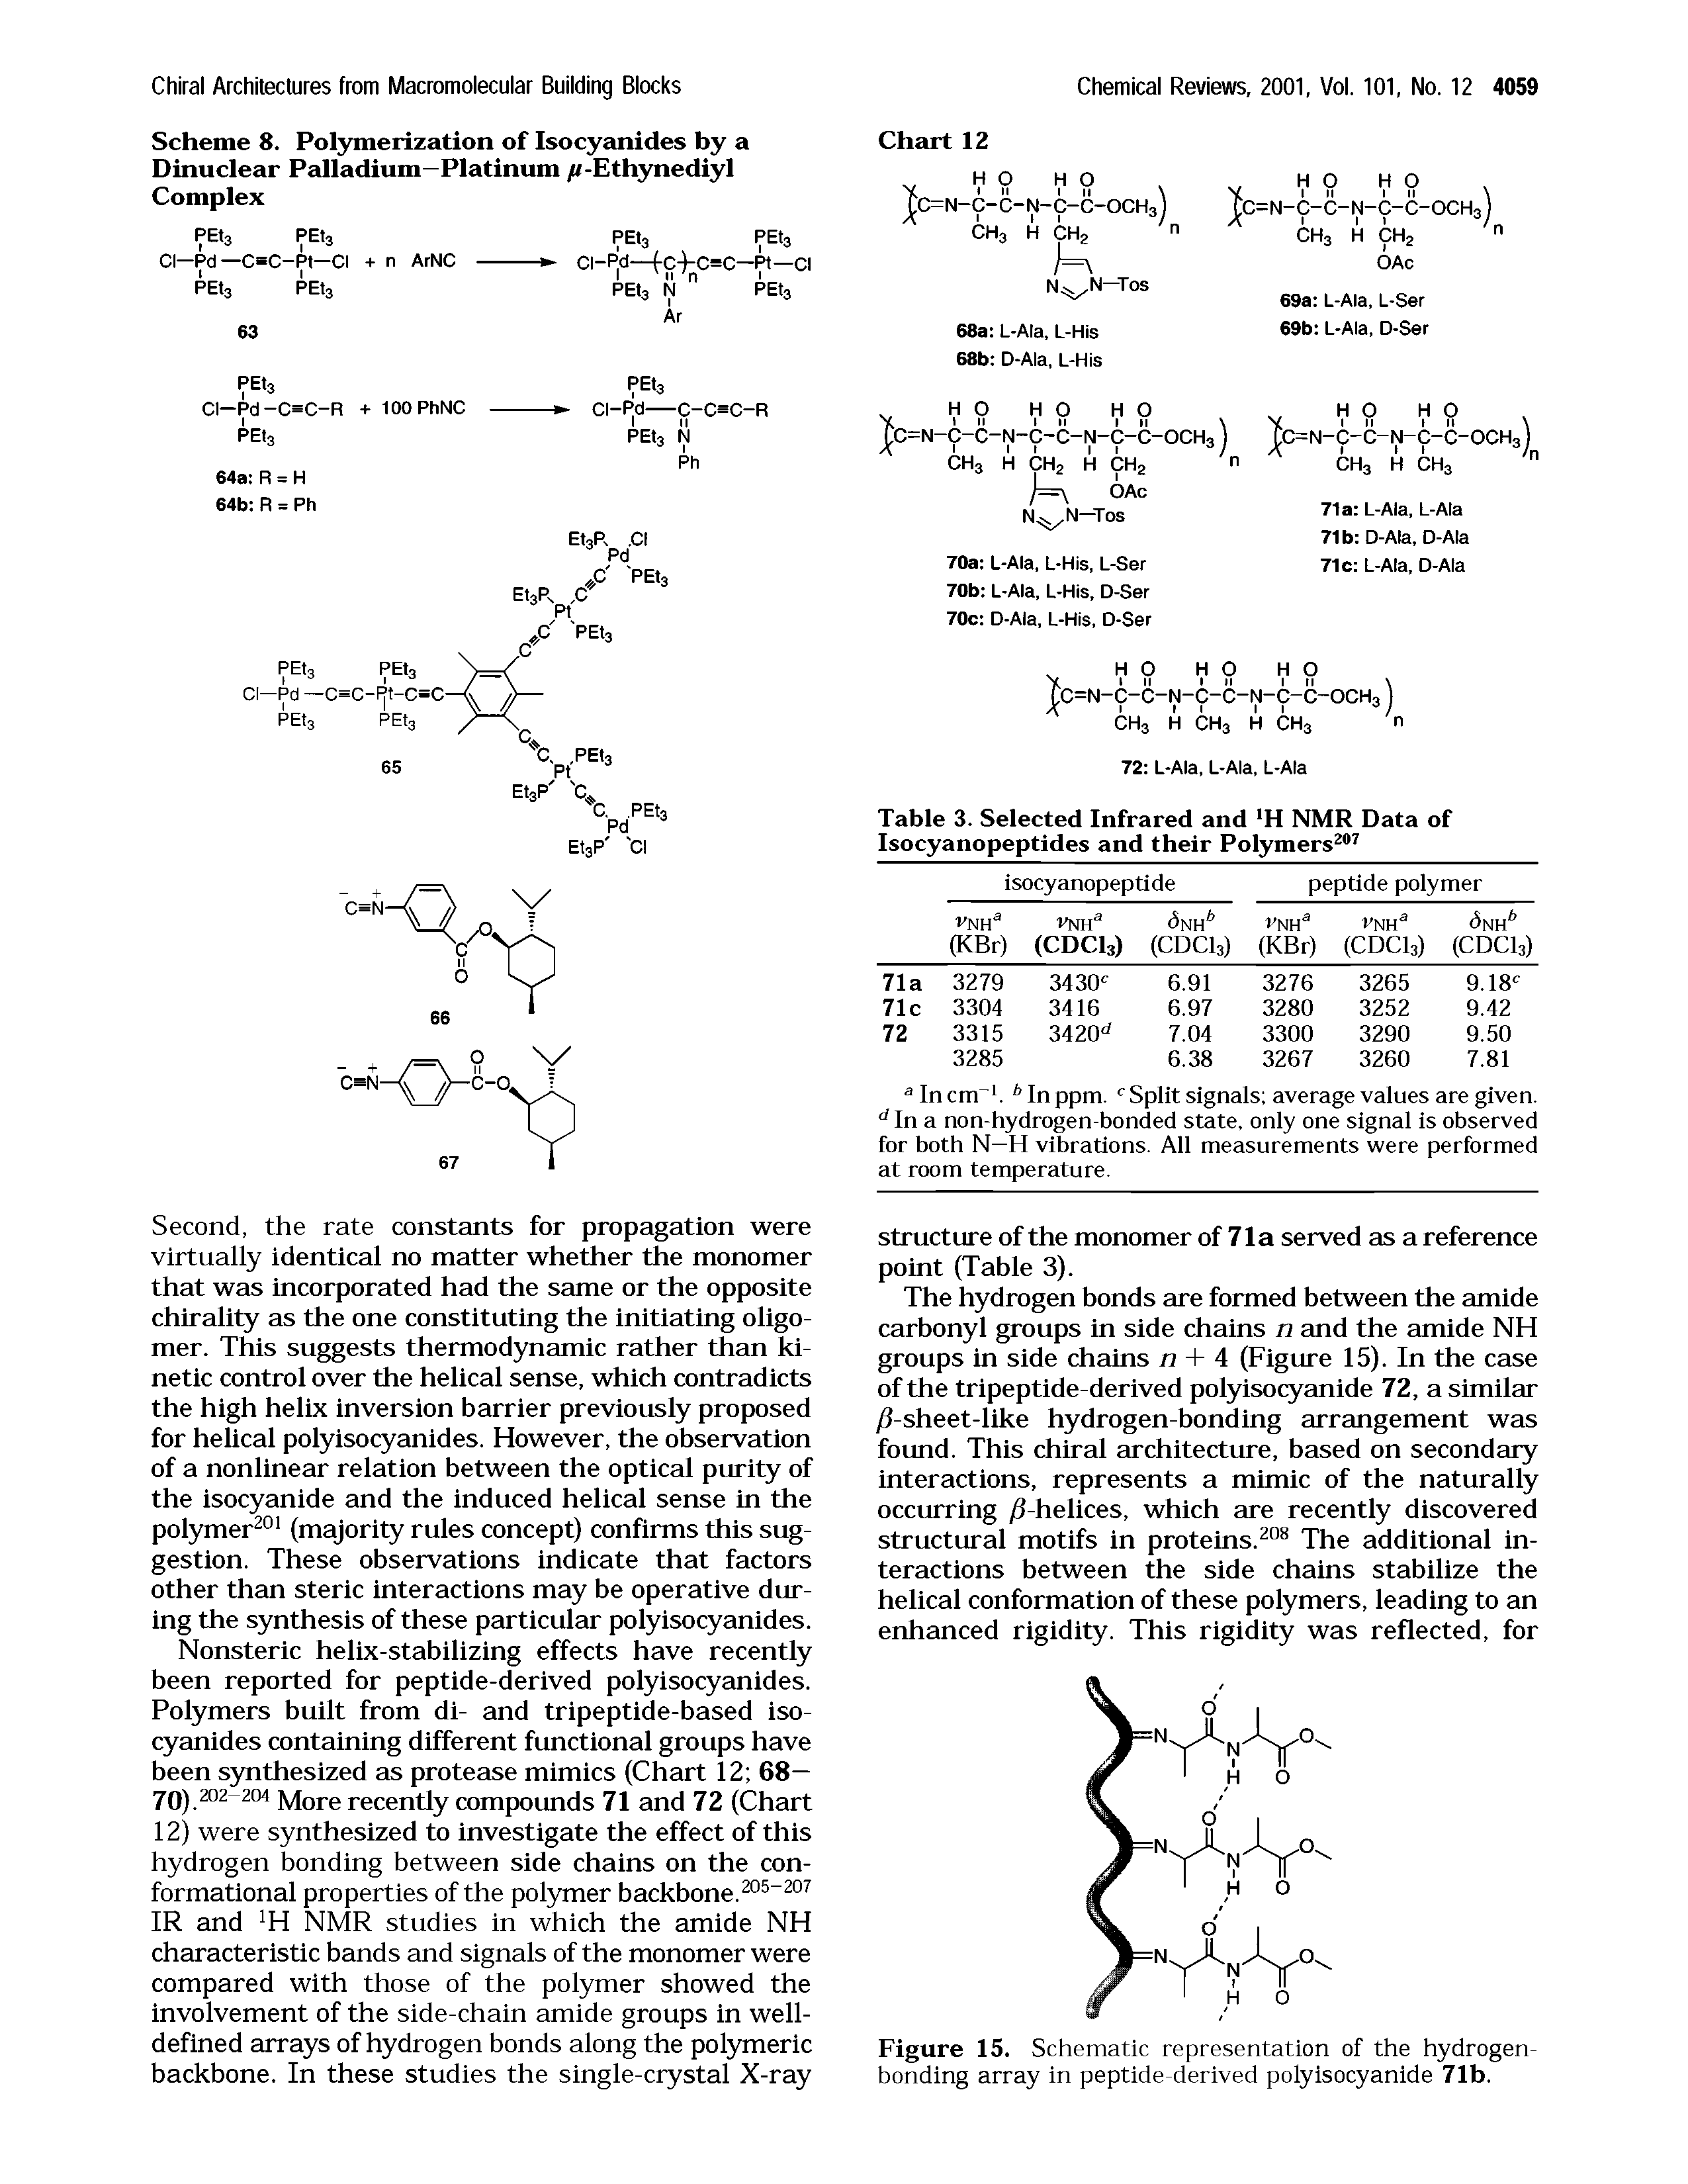 Scheme 8. Polymerization of Isocyanides by a Dinuclear Palladium—Platinum //-Ethynediyl Complex...